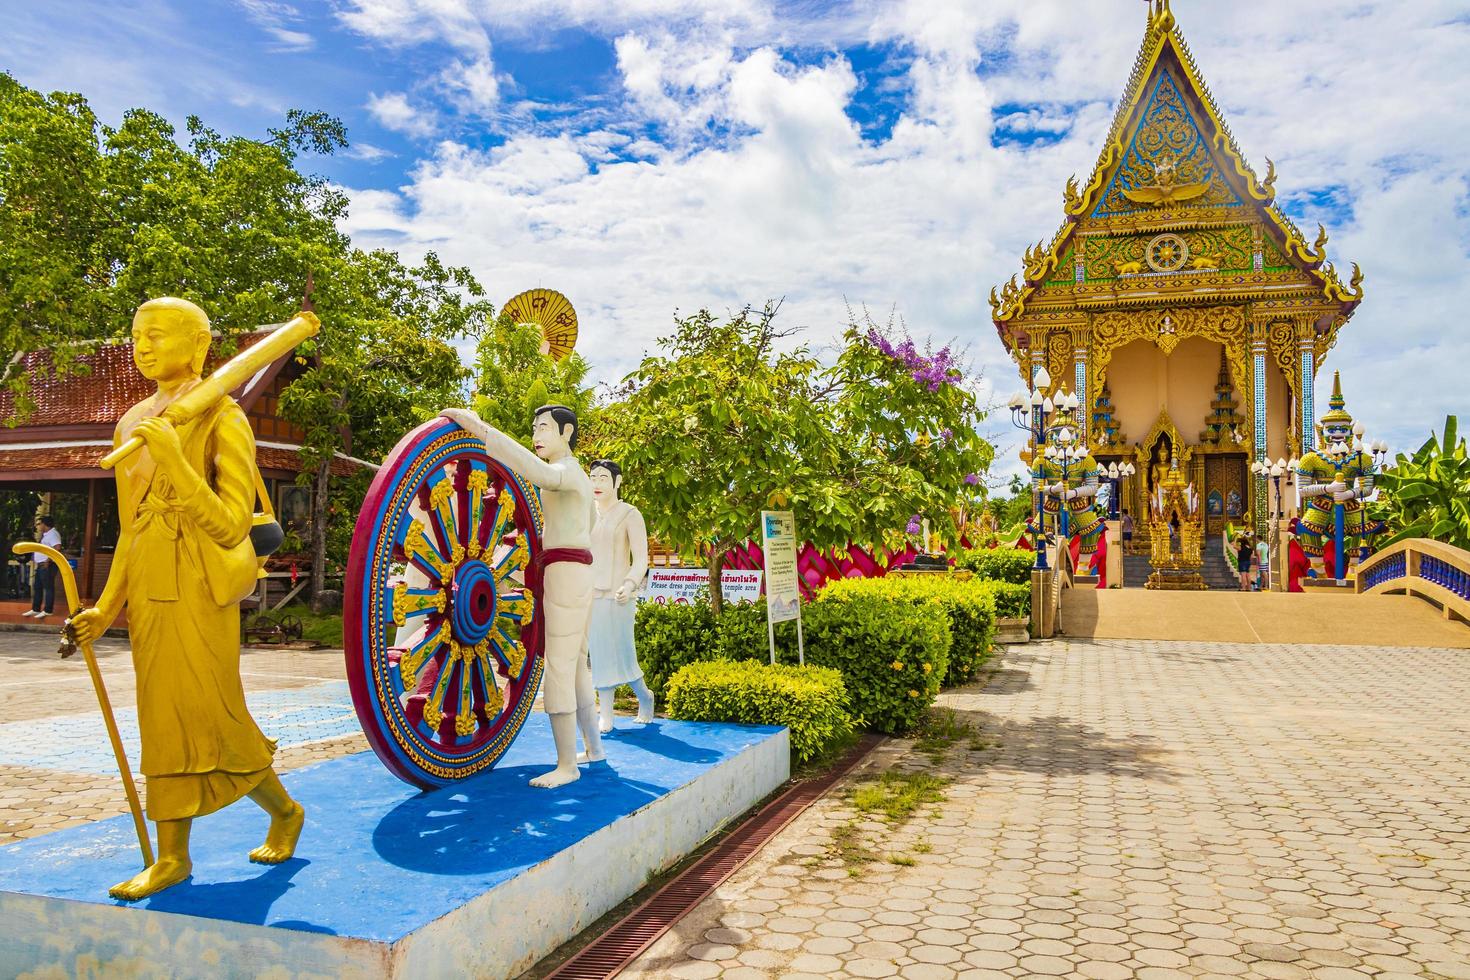 Arquitectura colorida en el templo Wat Plai Laem, en la isla de Koh Samui, Tailandia, 2018 foto